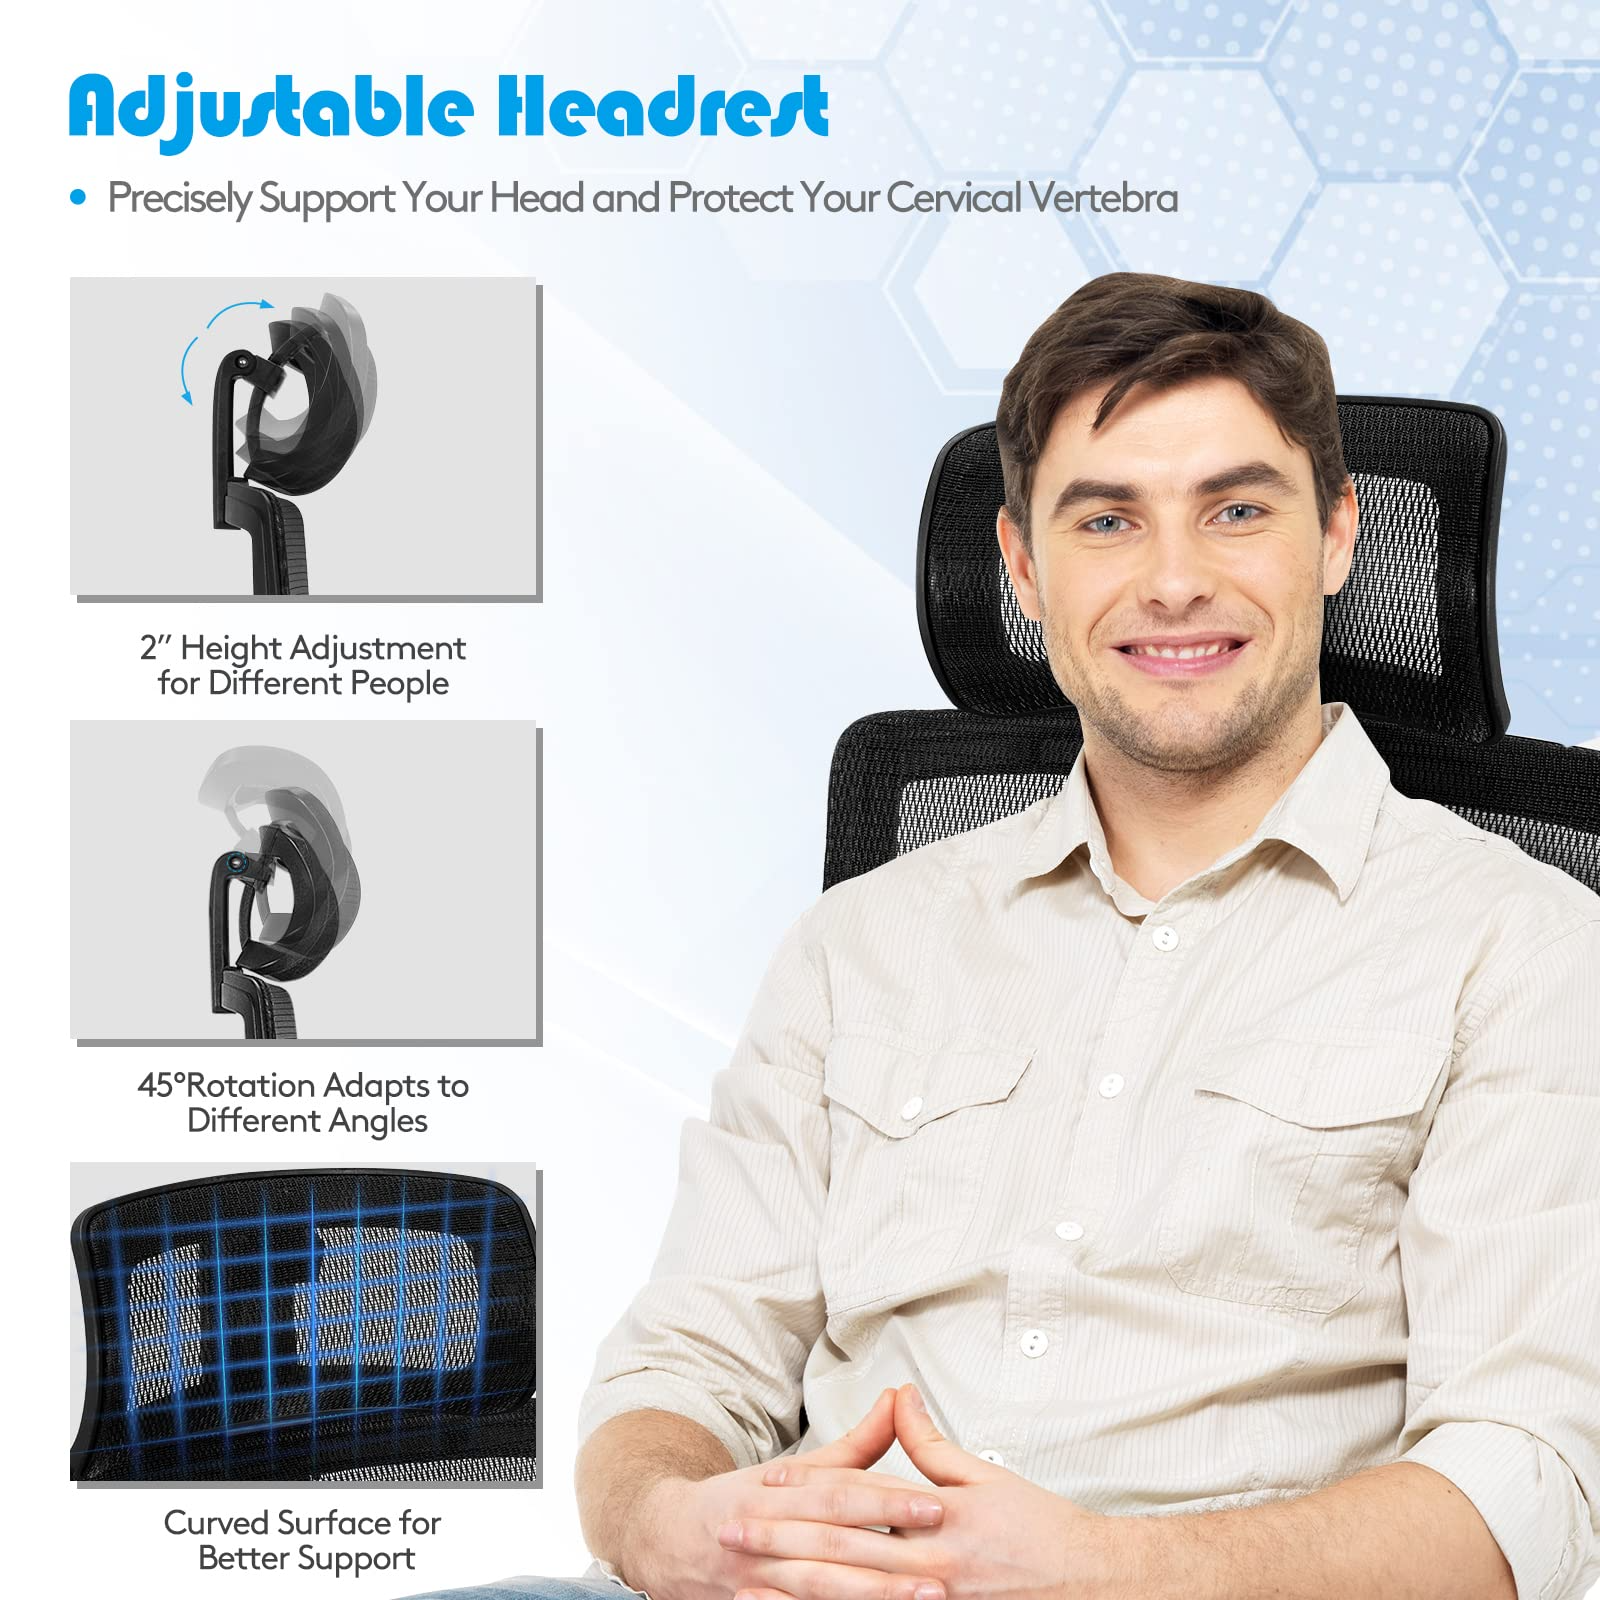 Giantex High-Back Mesh Executive Chair, with Adjustable Headrest, 3D Armrest, Lumbar Support, Reclining Backrest